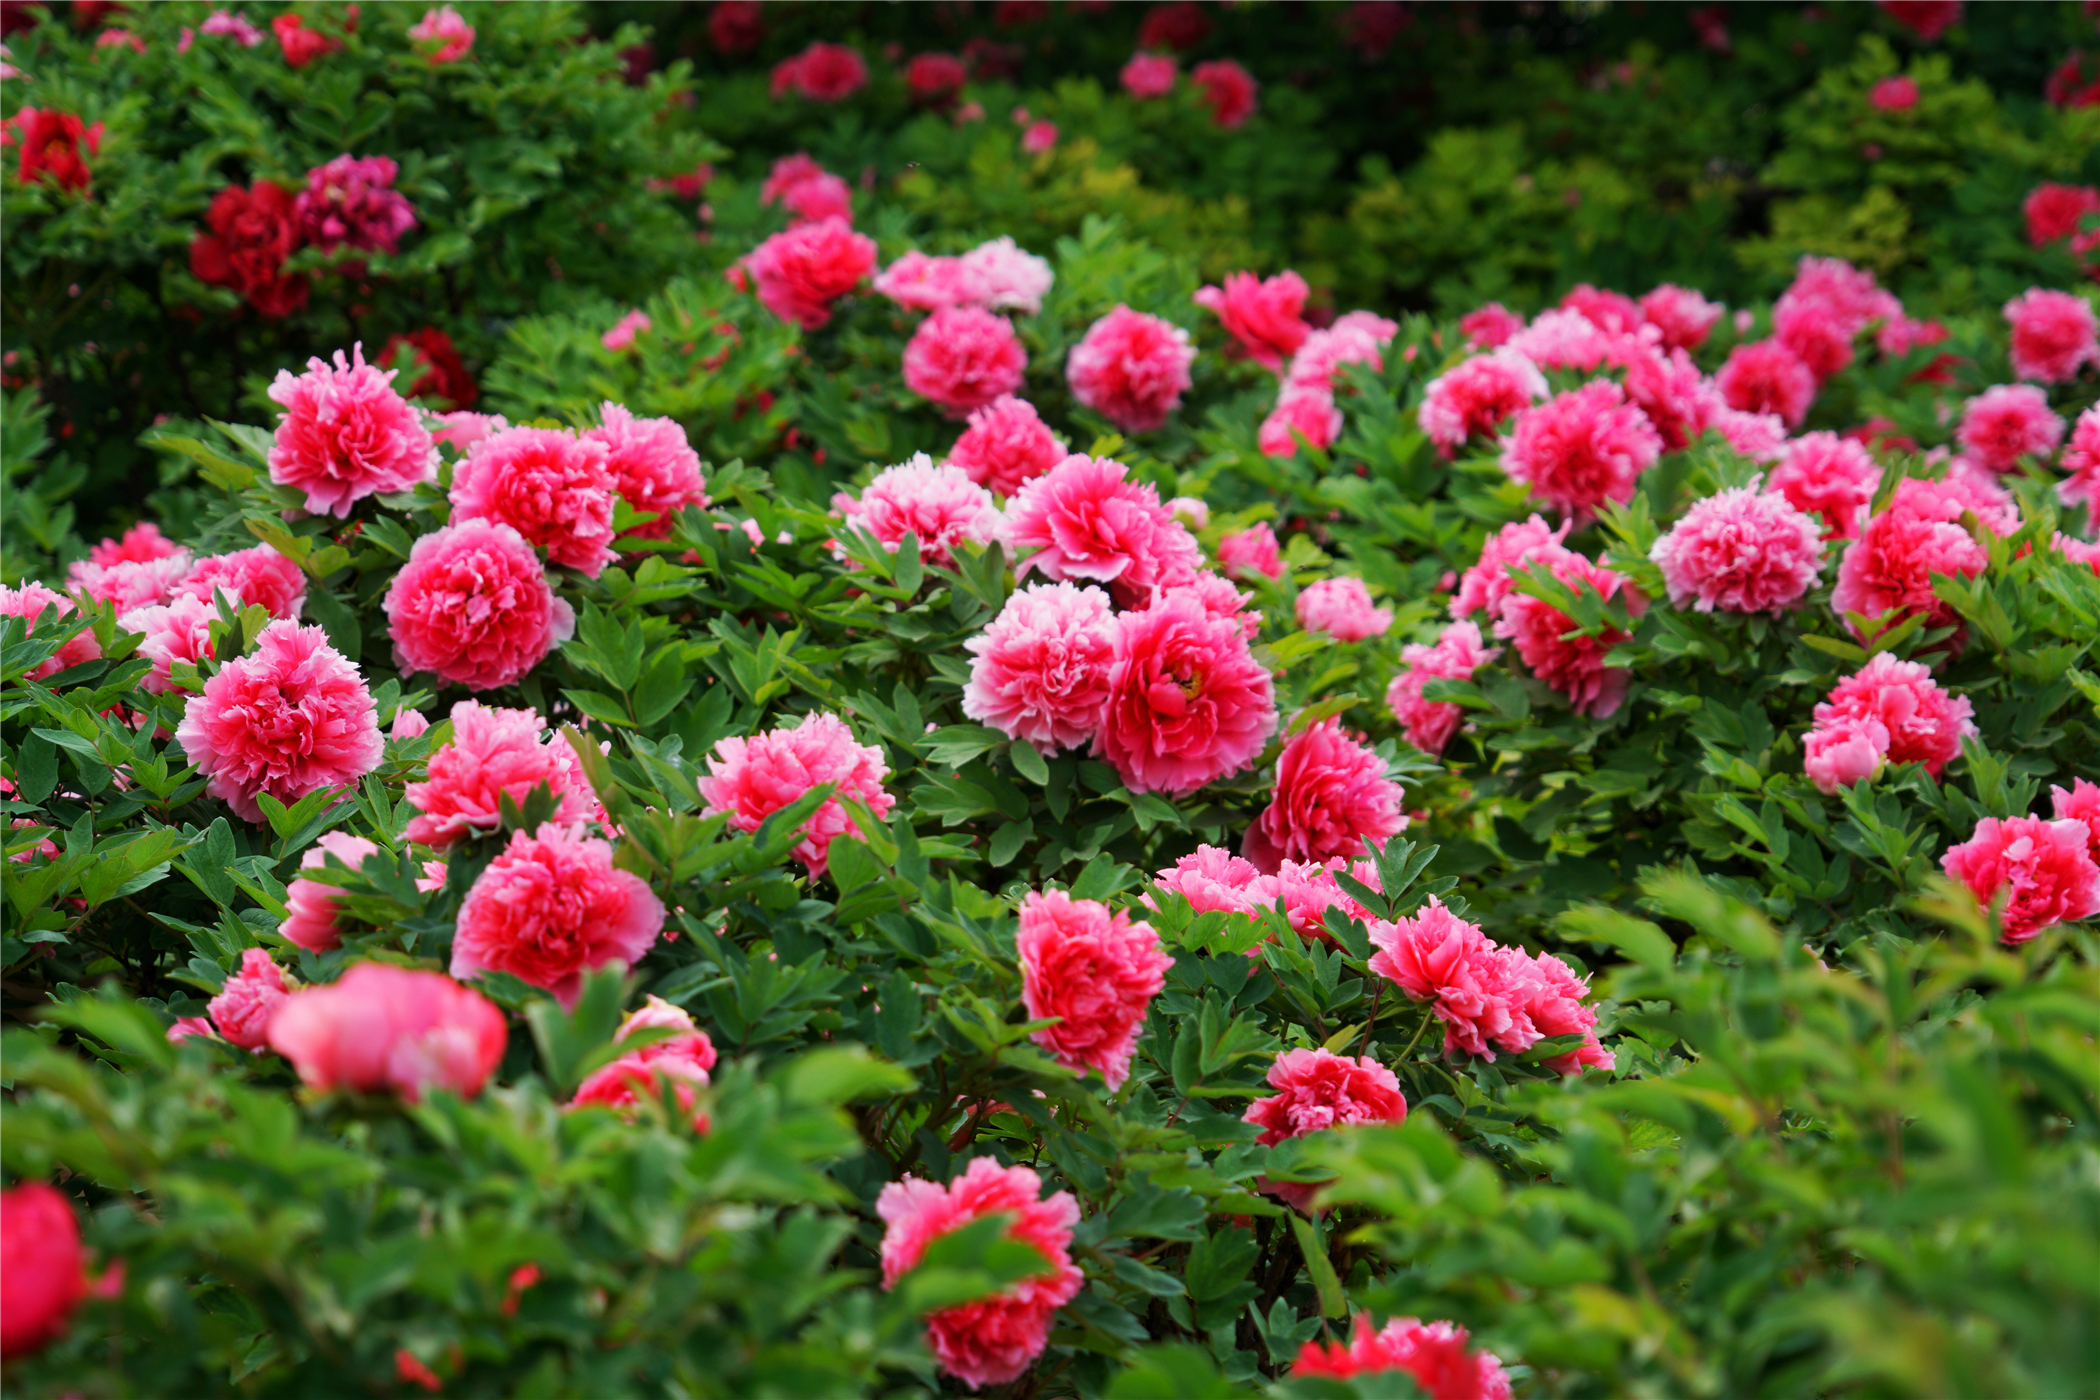 Bật mí những cách chăm sóc vườn hoa cực hay mà bạn chưa từng biết!